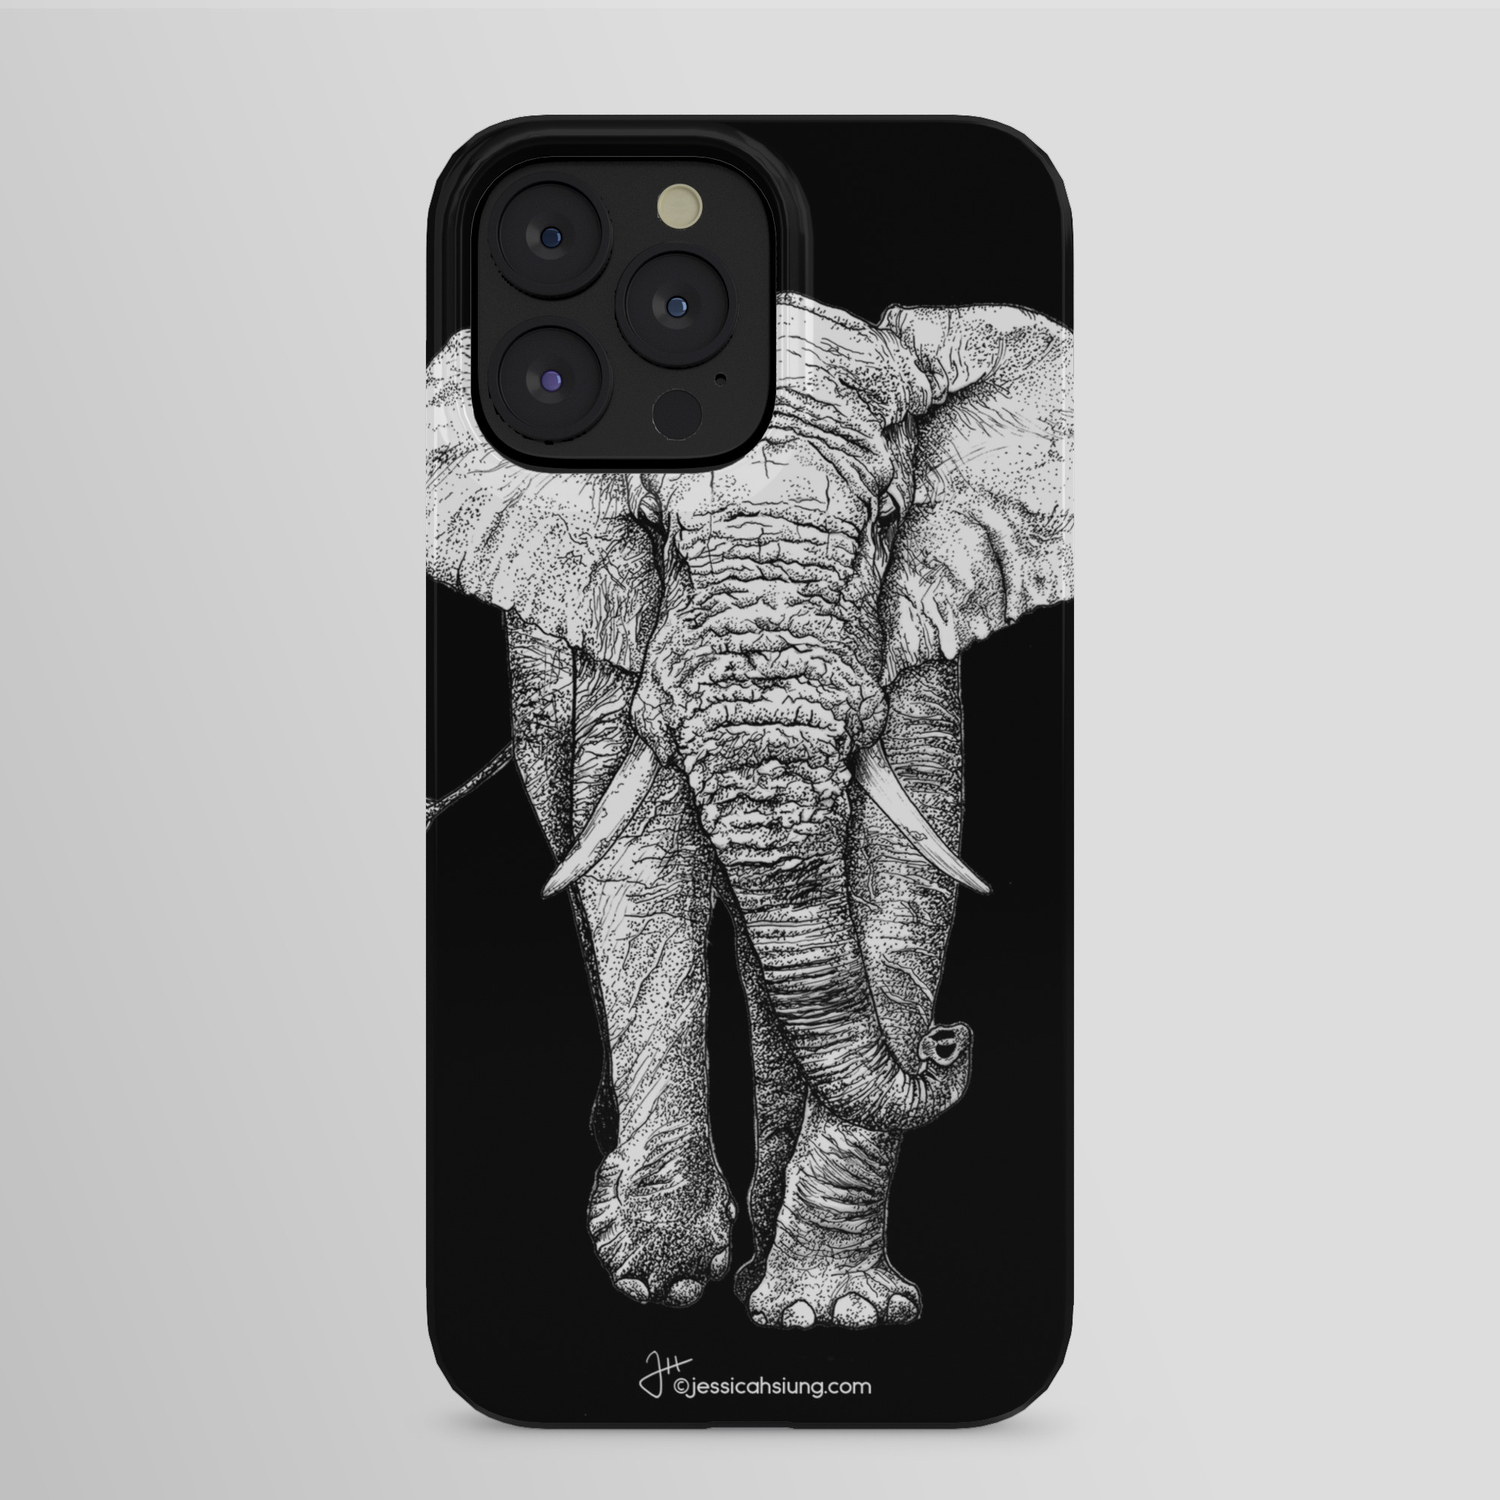 Vỏ iPhone hình voi châu Phi trên nền đen: Bạn yêu thích voi châu Phi và đang tìm kiếm một chiếc ốp iPhone vừa bảo vệ được thiết bị vừa làm đẹp cho điện thoại của mình? Hãy đến với chiếc ốp iPhone với hình voi châu Phi trên nền đen sang trọng này. Sản phẩm được làm từ chất liệu cao cấp, chống trầy xước và bảo vệ tối đa cho iPhone của bạn.